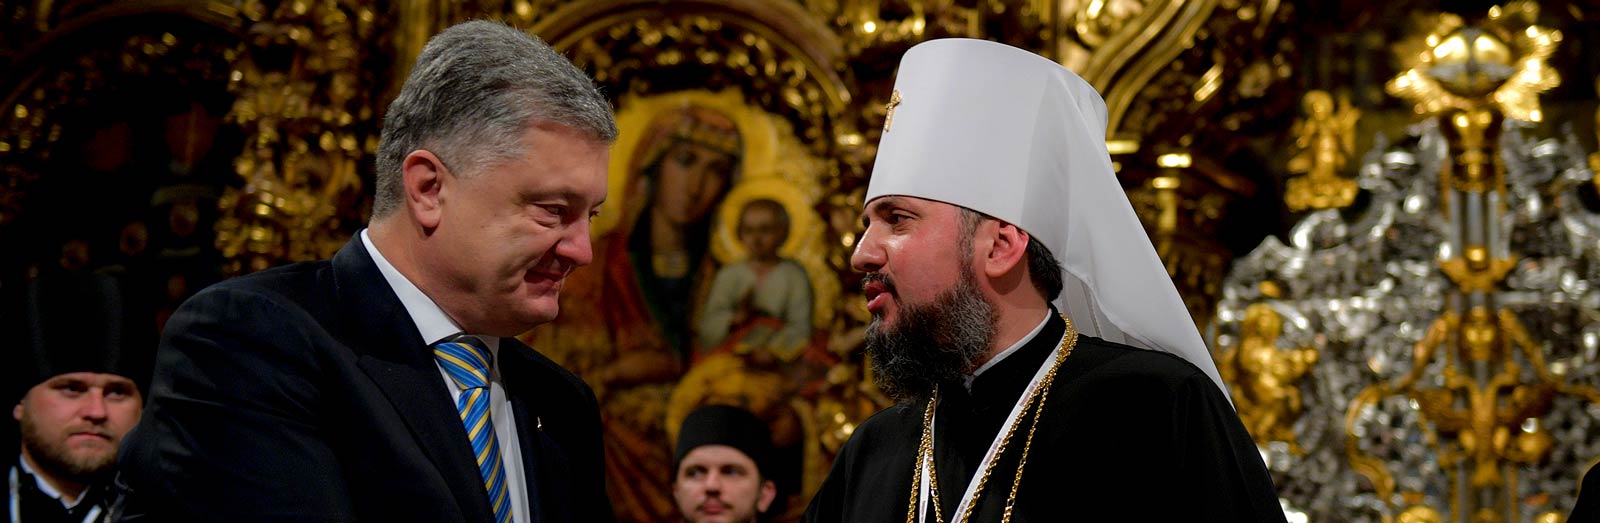 Автокефалія Православної Церкви України: як це було